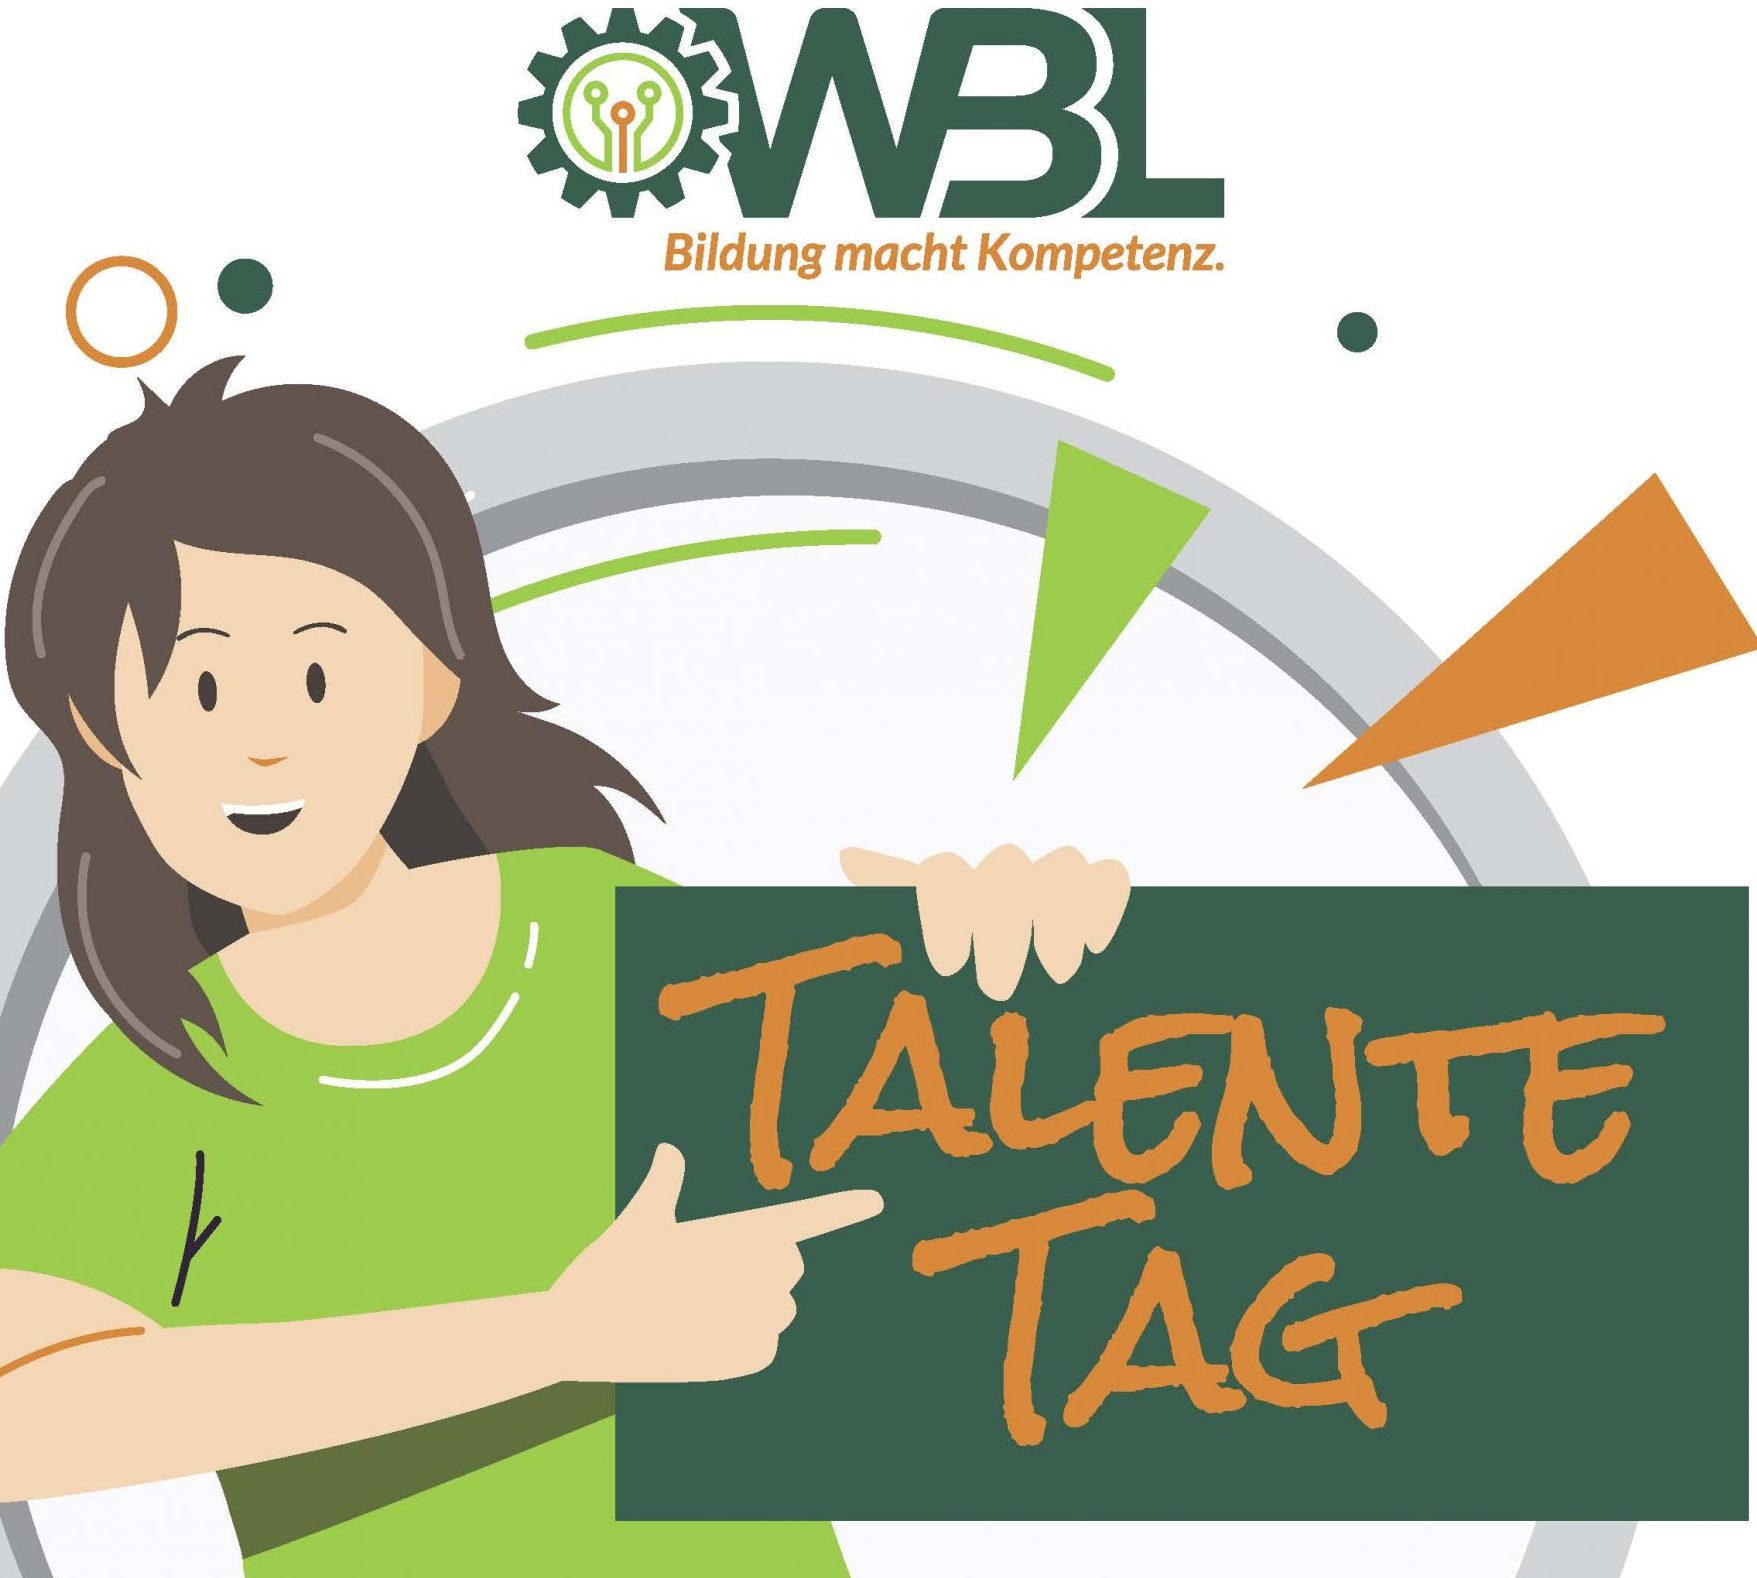 WBL_Poster_TalenteTag_A3